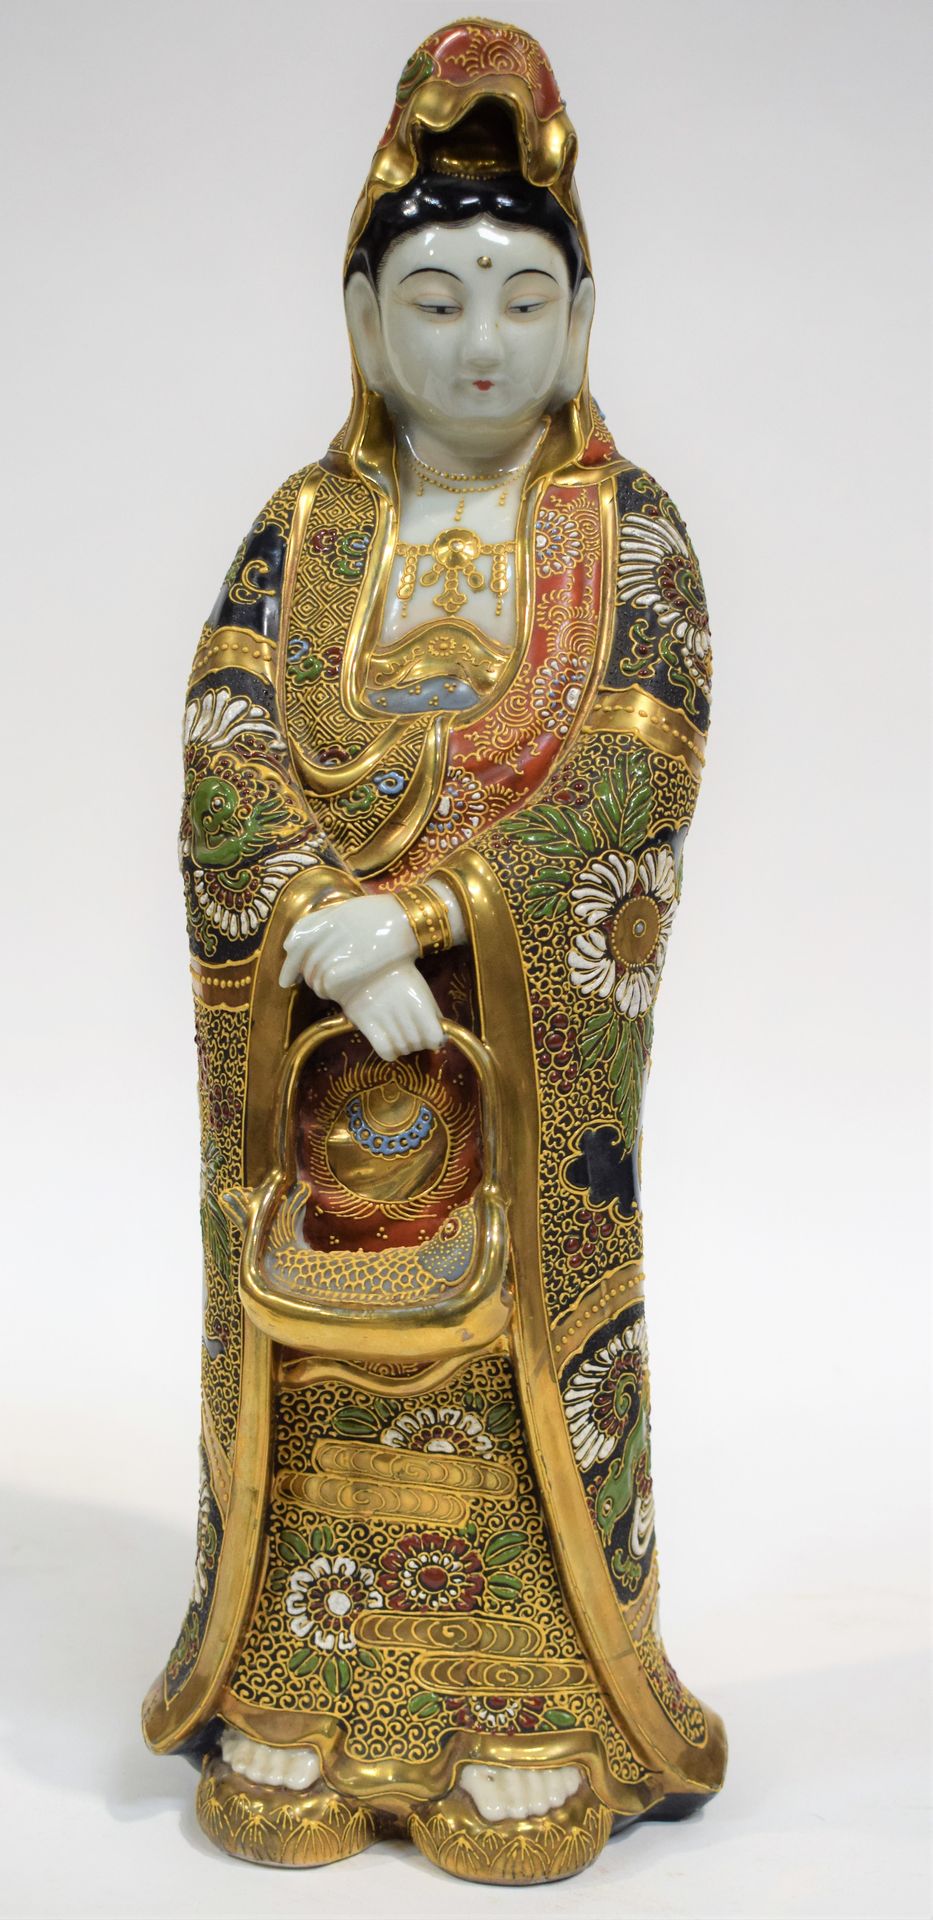 Null 日本瓷器观音菩萨像，高50厘米

|

日本瓷器观音菩萨像，高：50厘米

|

由日本陶瓷制成的观音菩萨像，高度为50厘米。